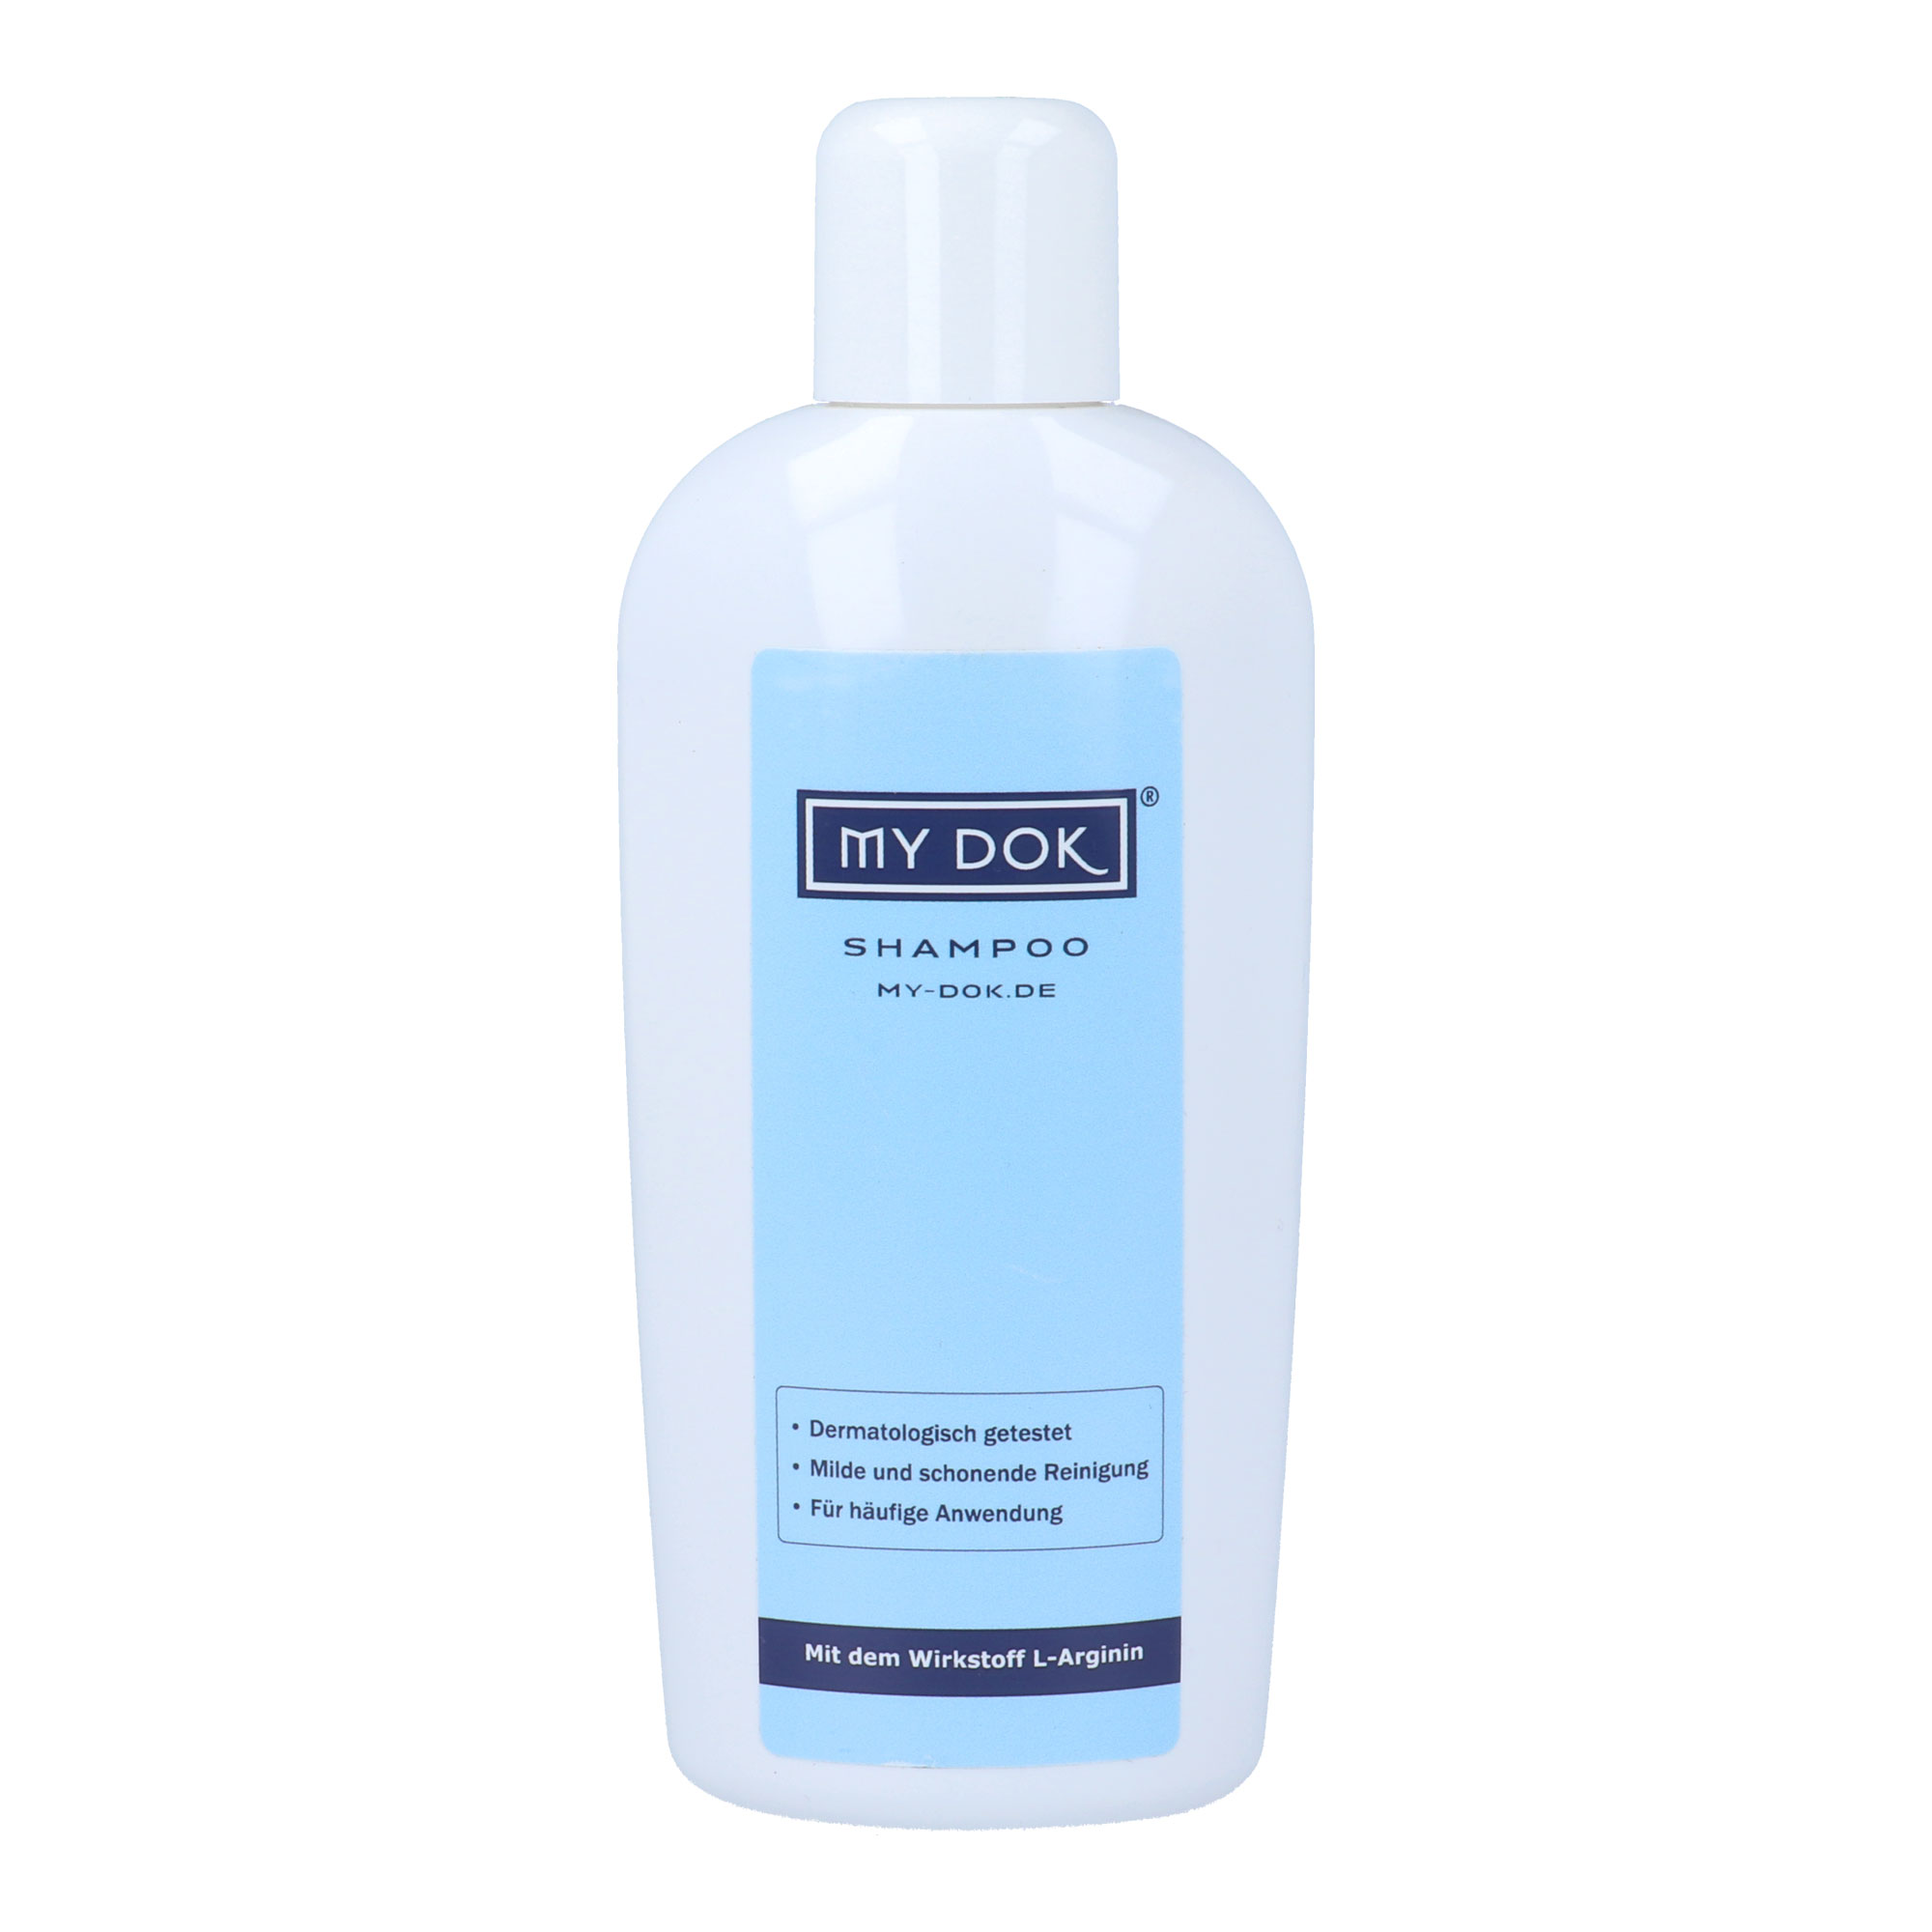 Shampoo für geschmeidiges und glattes Haar sowie zur Pflege der Kopfhaut.